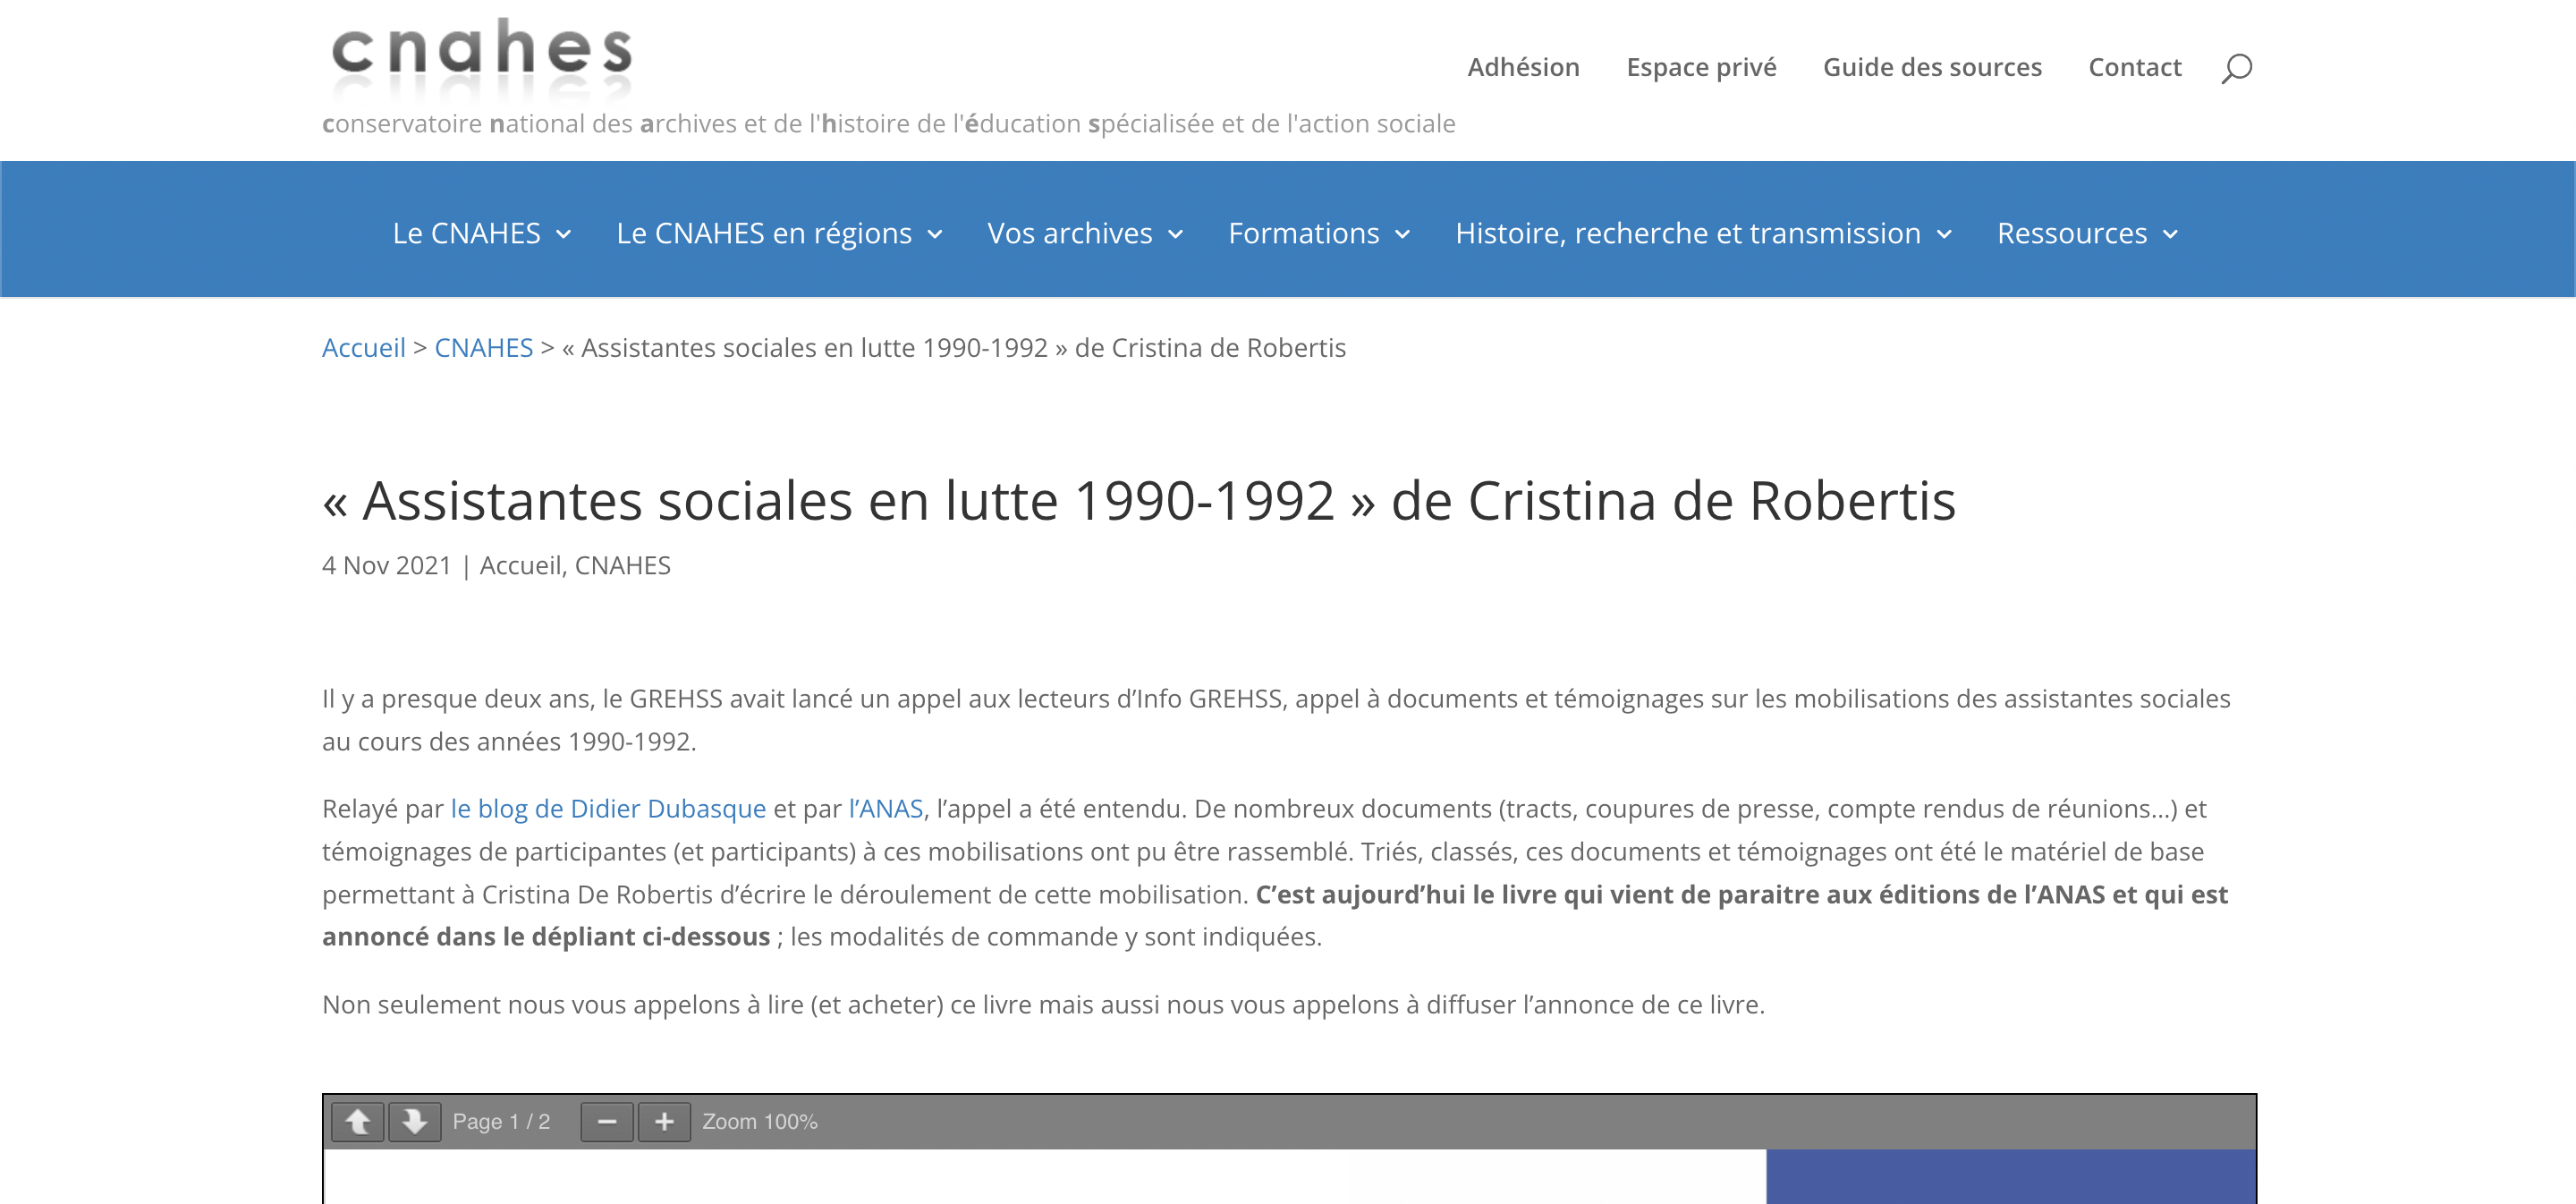 Cristina De Robertis - Assistantes sociales en lutte 1990-1992 le succès trente ans après !